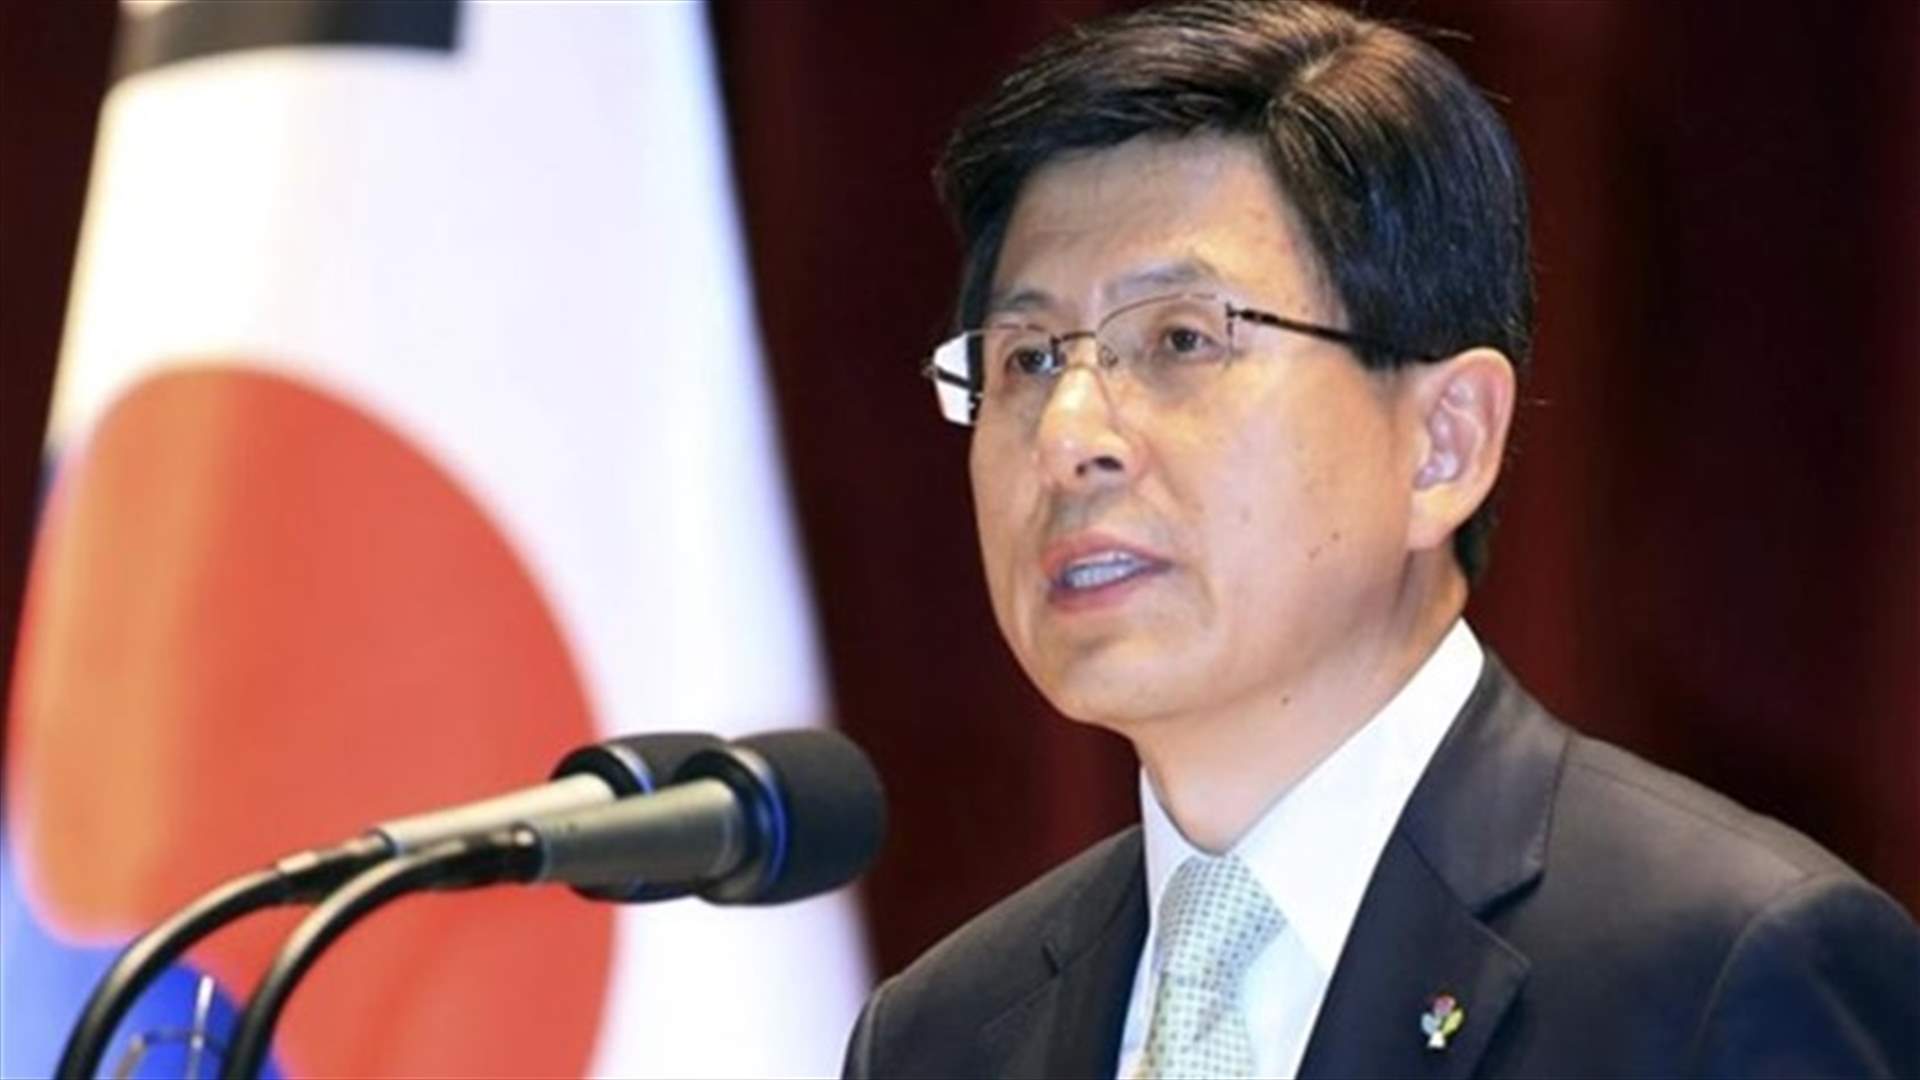 حزب المعارضة الرئيسي في كوريا الجنوبية يسعى لمساءلة رئيس الوزراء